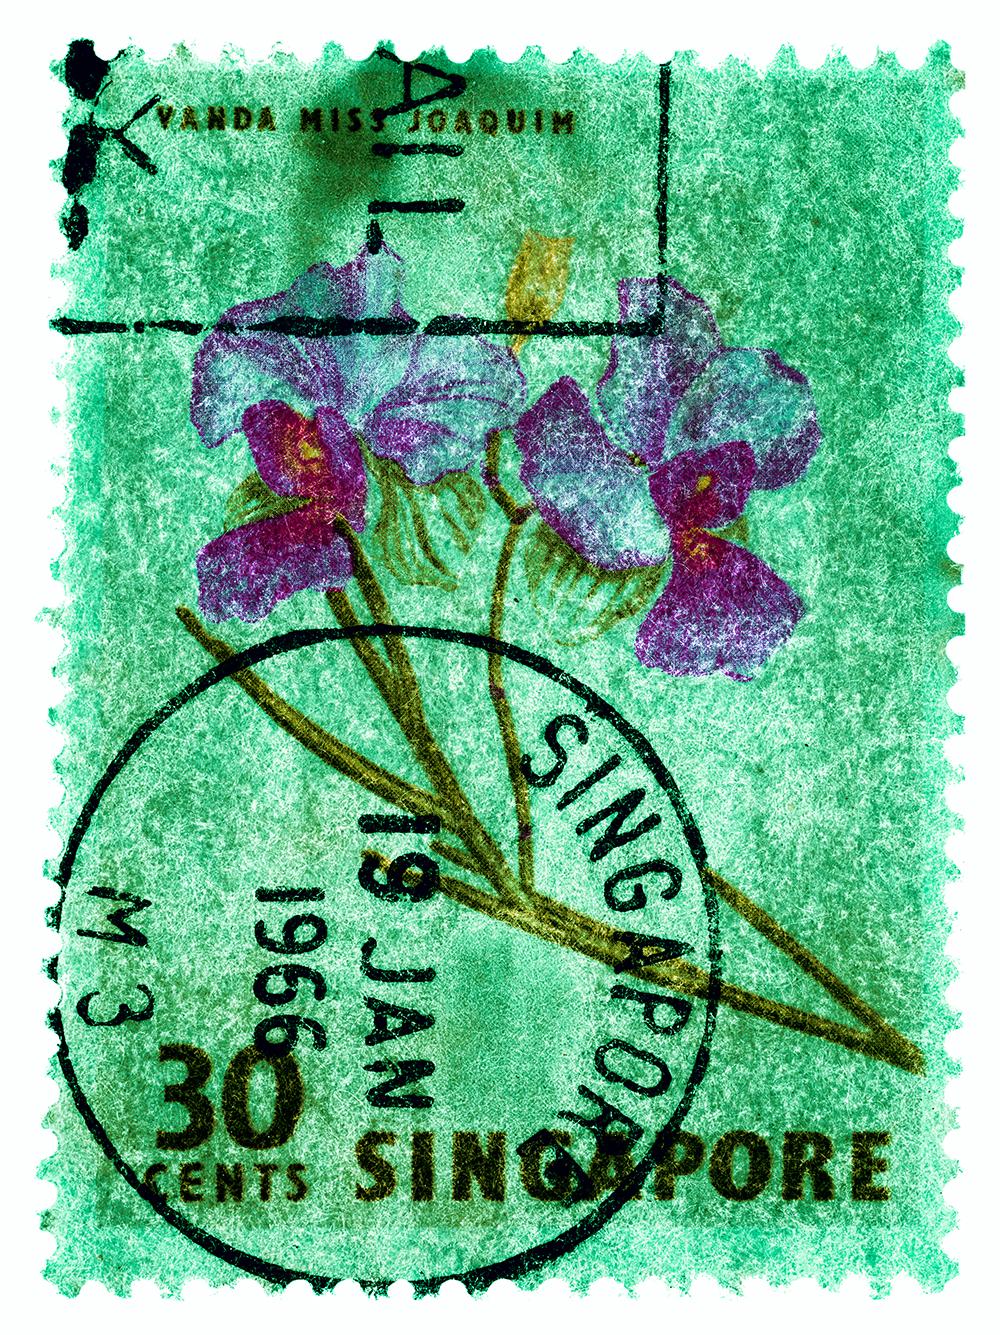 Collection de timbres de Singapour, 30c Singapour Orchid Green - photo de couleur florale